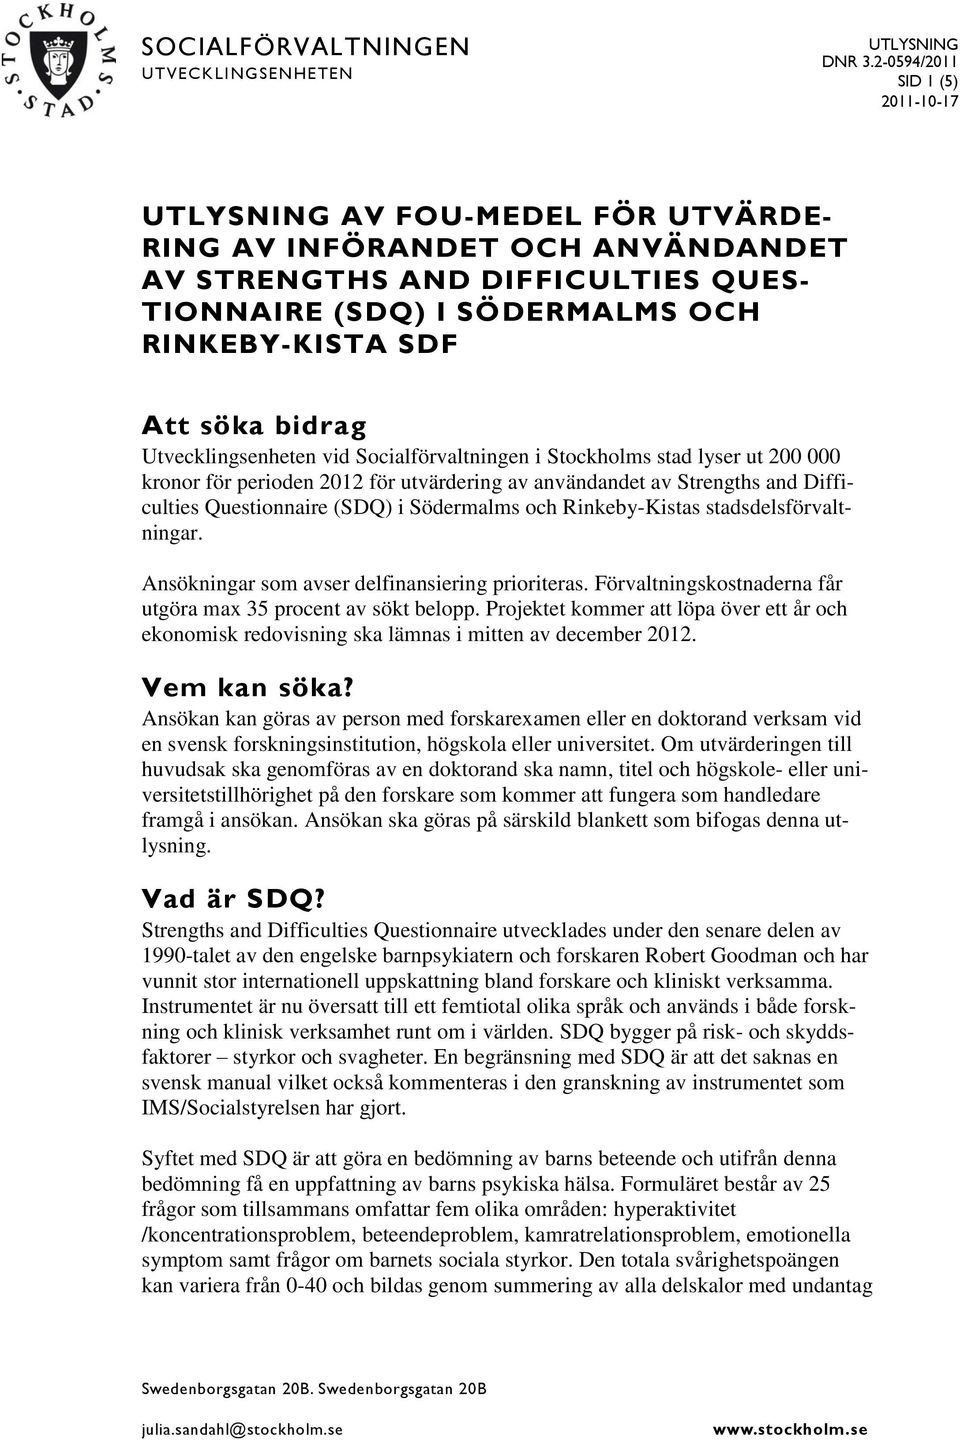 Utvecklingsenheten vid Socialförvaltningen i Stockholms stad lyser ut 200 000 kronor för perioden 2012 för utvärdering av användandet av Strengths and Difficulties Questionnaire (SDQ) i Södermalms